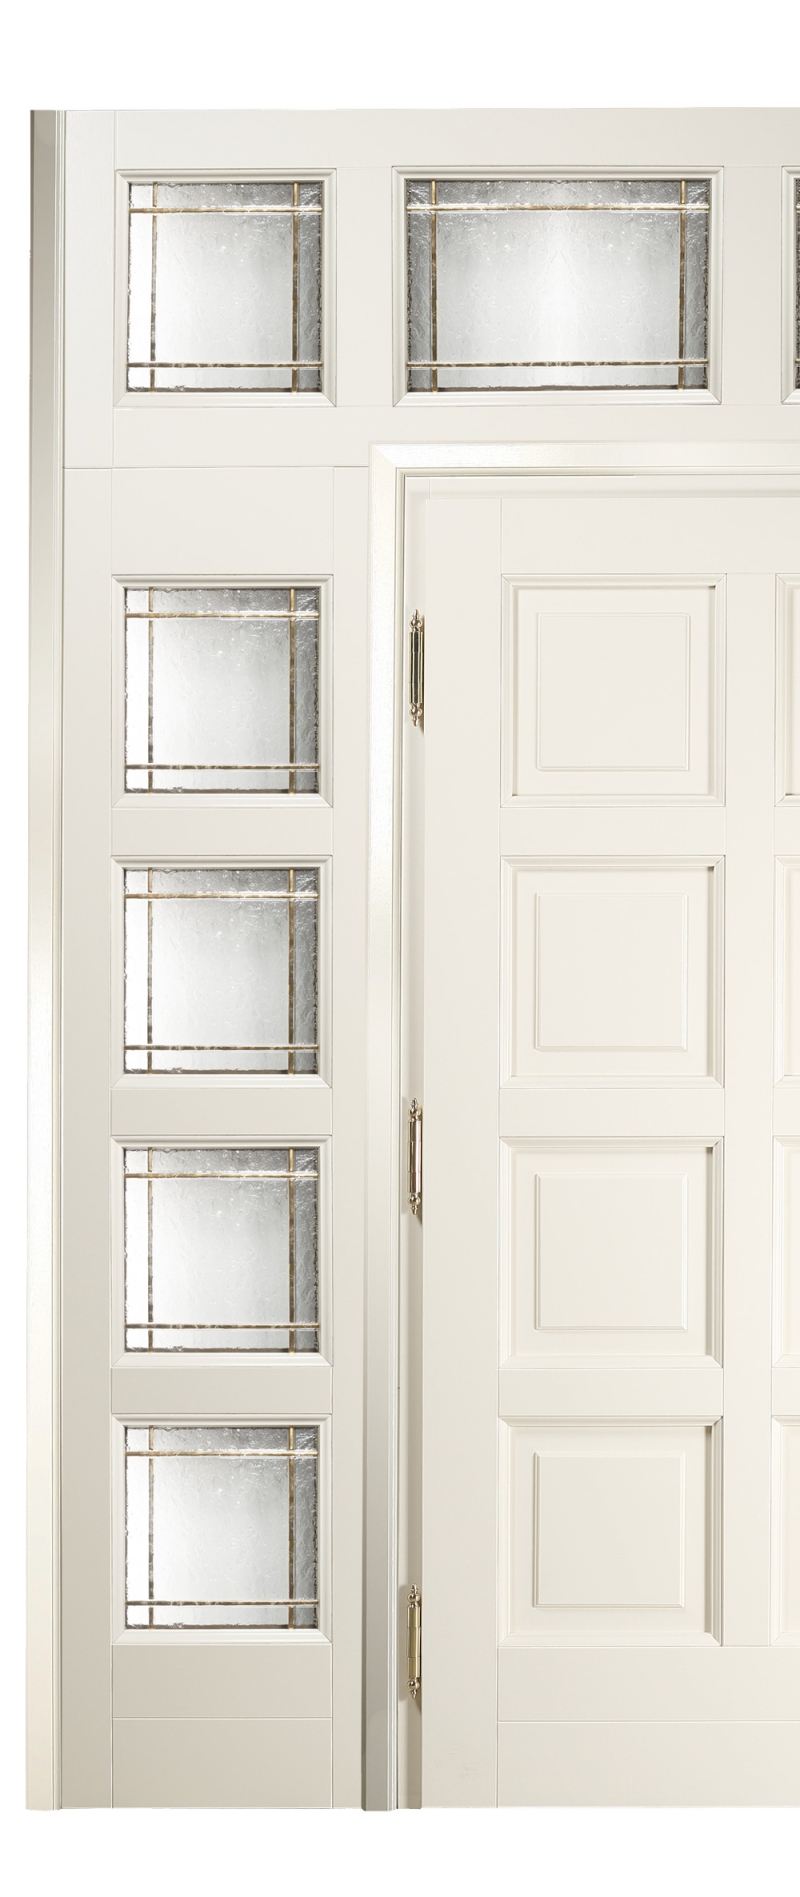 Дверной портал, стиль классический, дизайн Sige Gold, модель Custom Collection, Porta interna a vetro